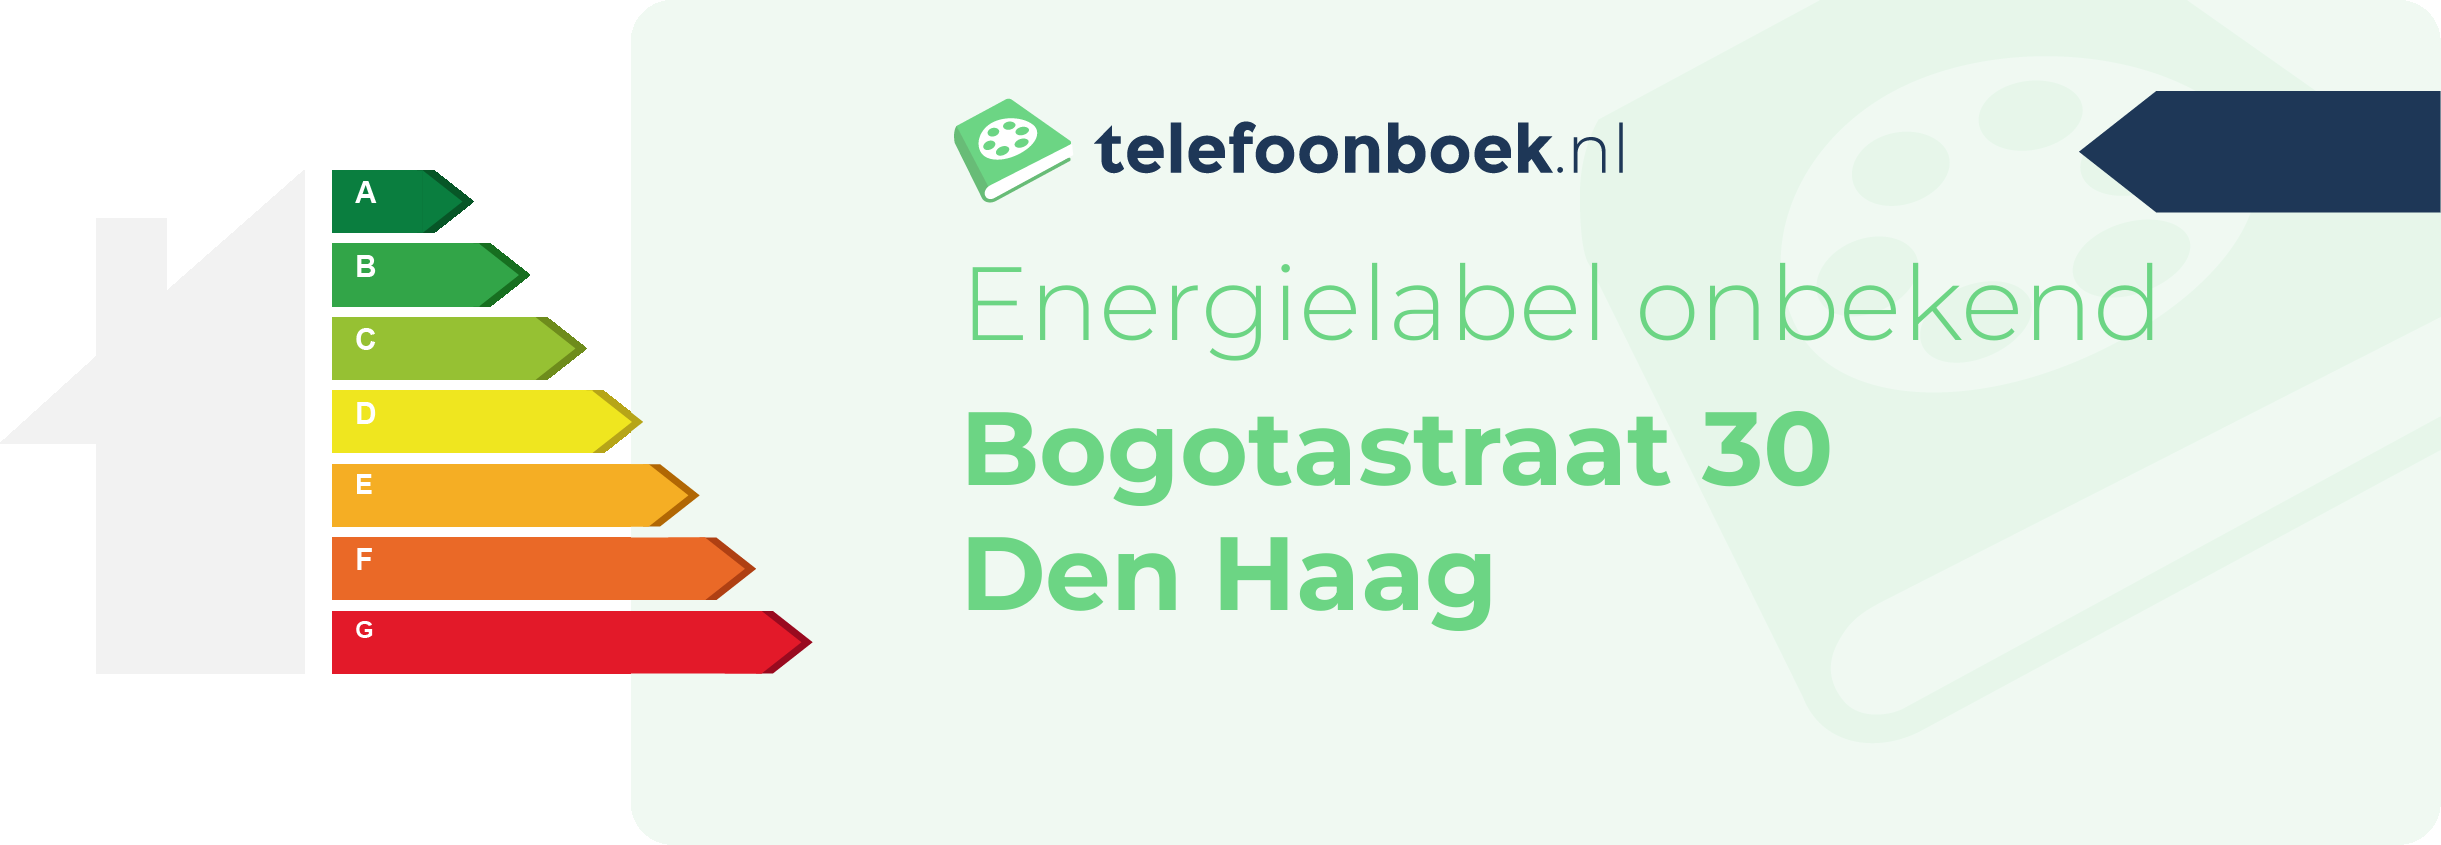 Energielabel Bogotastraat 30 Den Haag